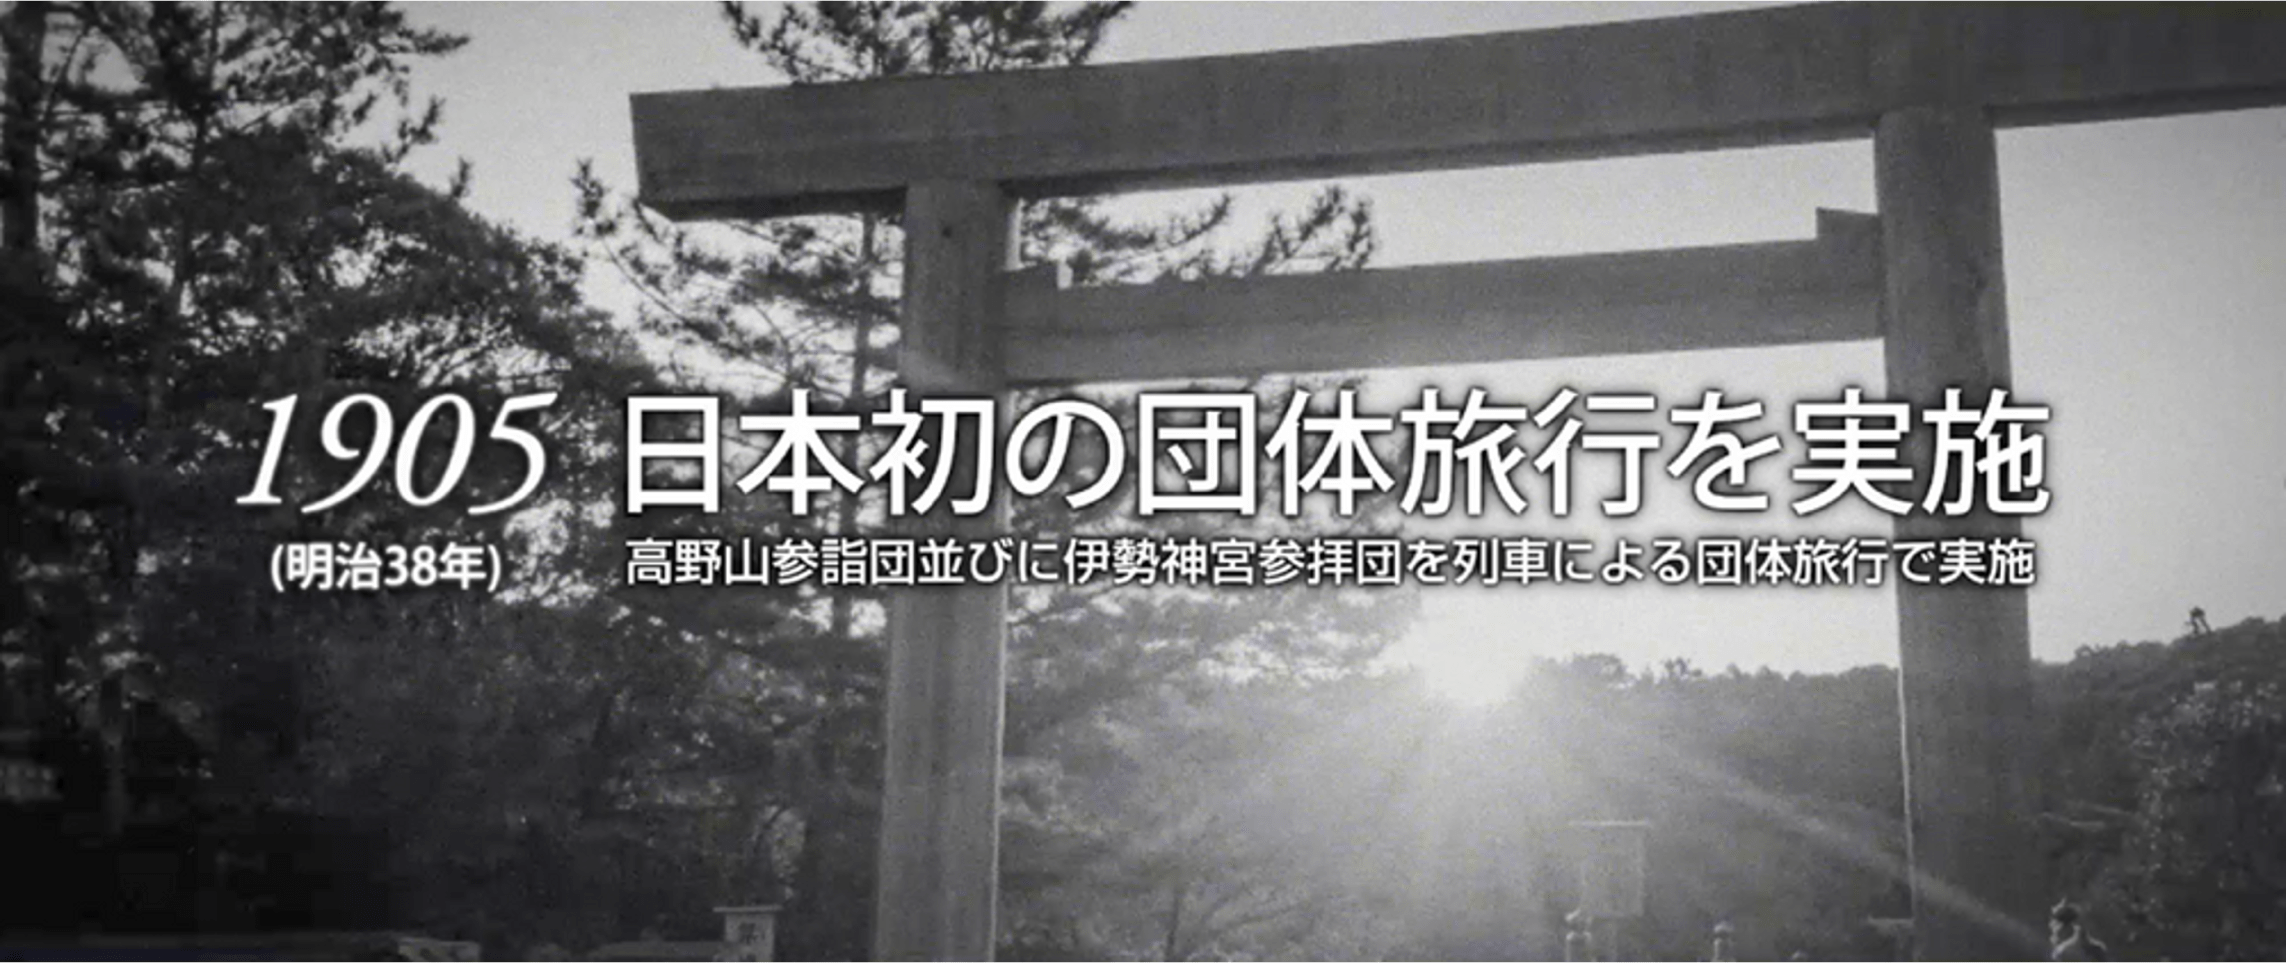 1905（明治38年）日本発の団体旅行を実施　高野山参詣団並びに伊勢神宮参拝団を列車による団体旅行で実施